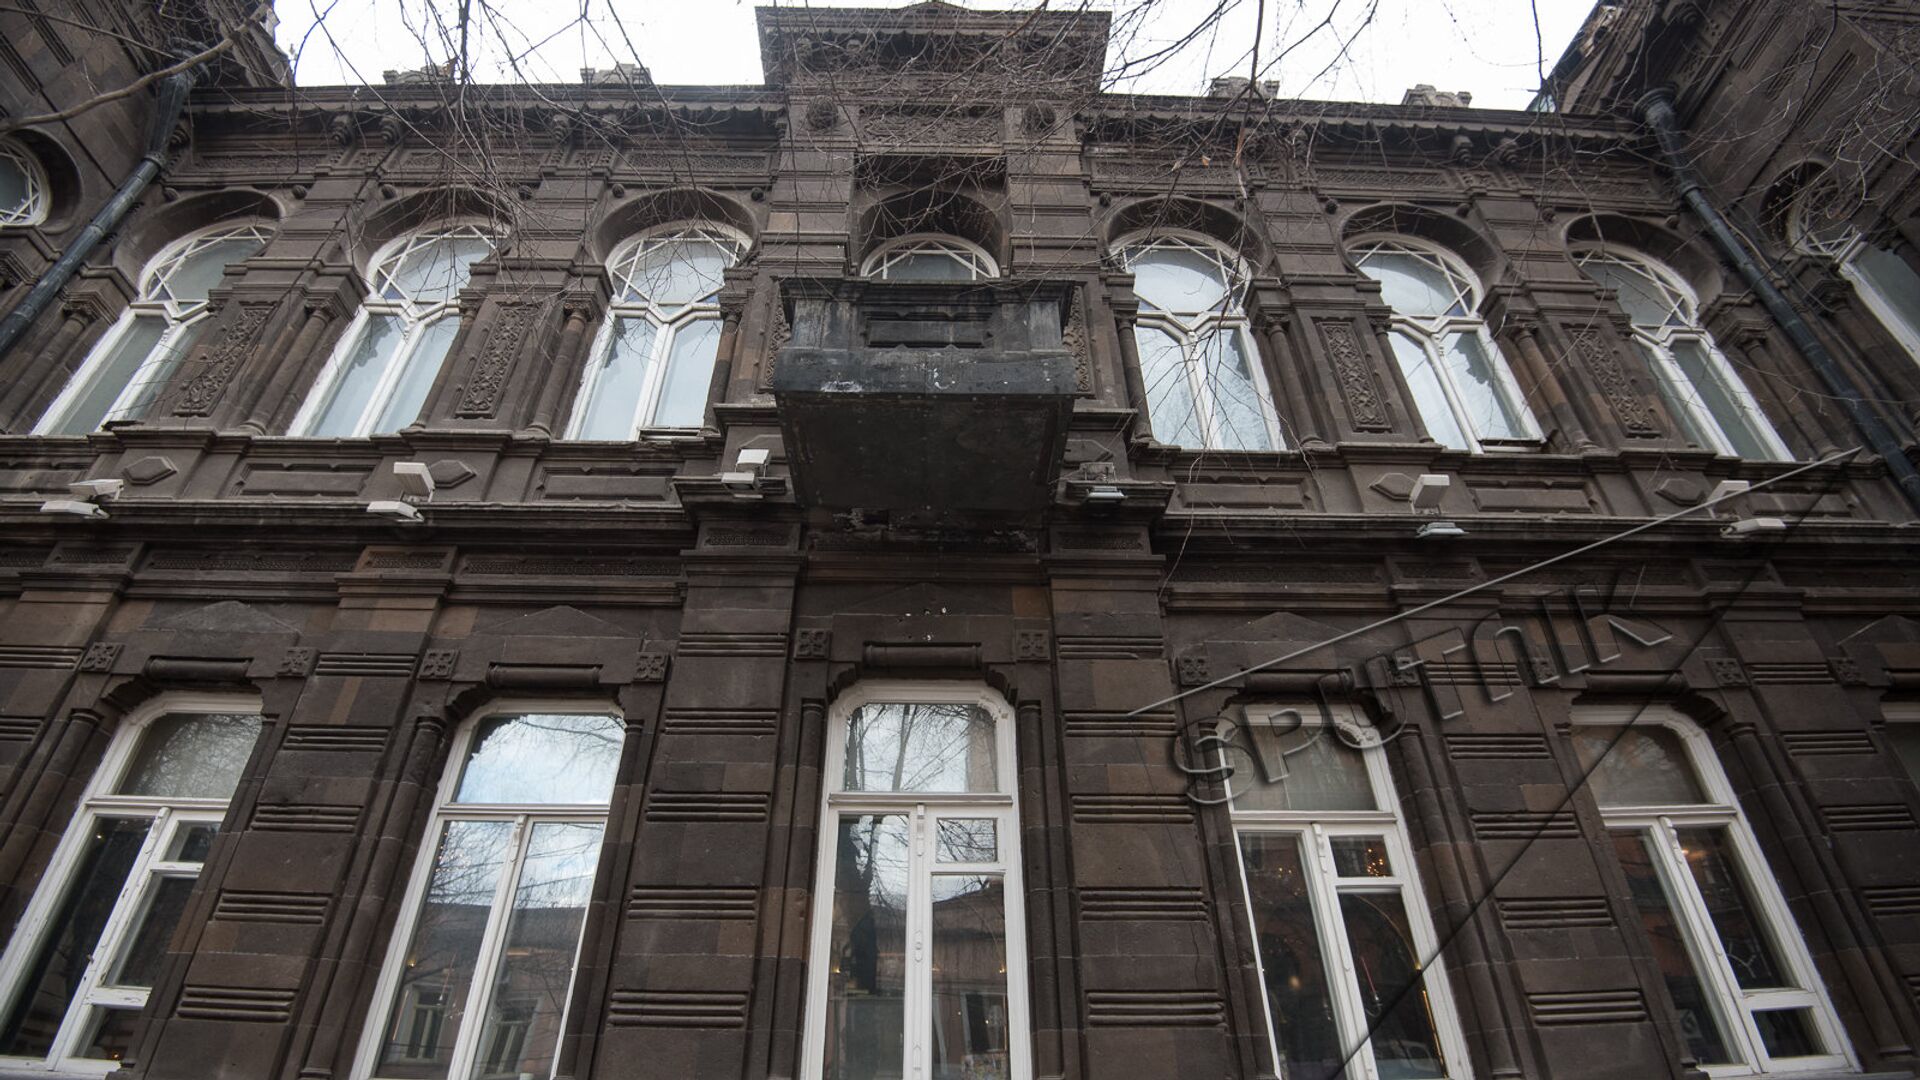 Улица Абовяна 3, здание АОКС-а. Старый Ереван  - Sputnik Արմենիա, 1920, 19.04.2021